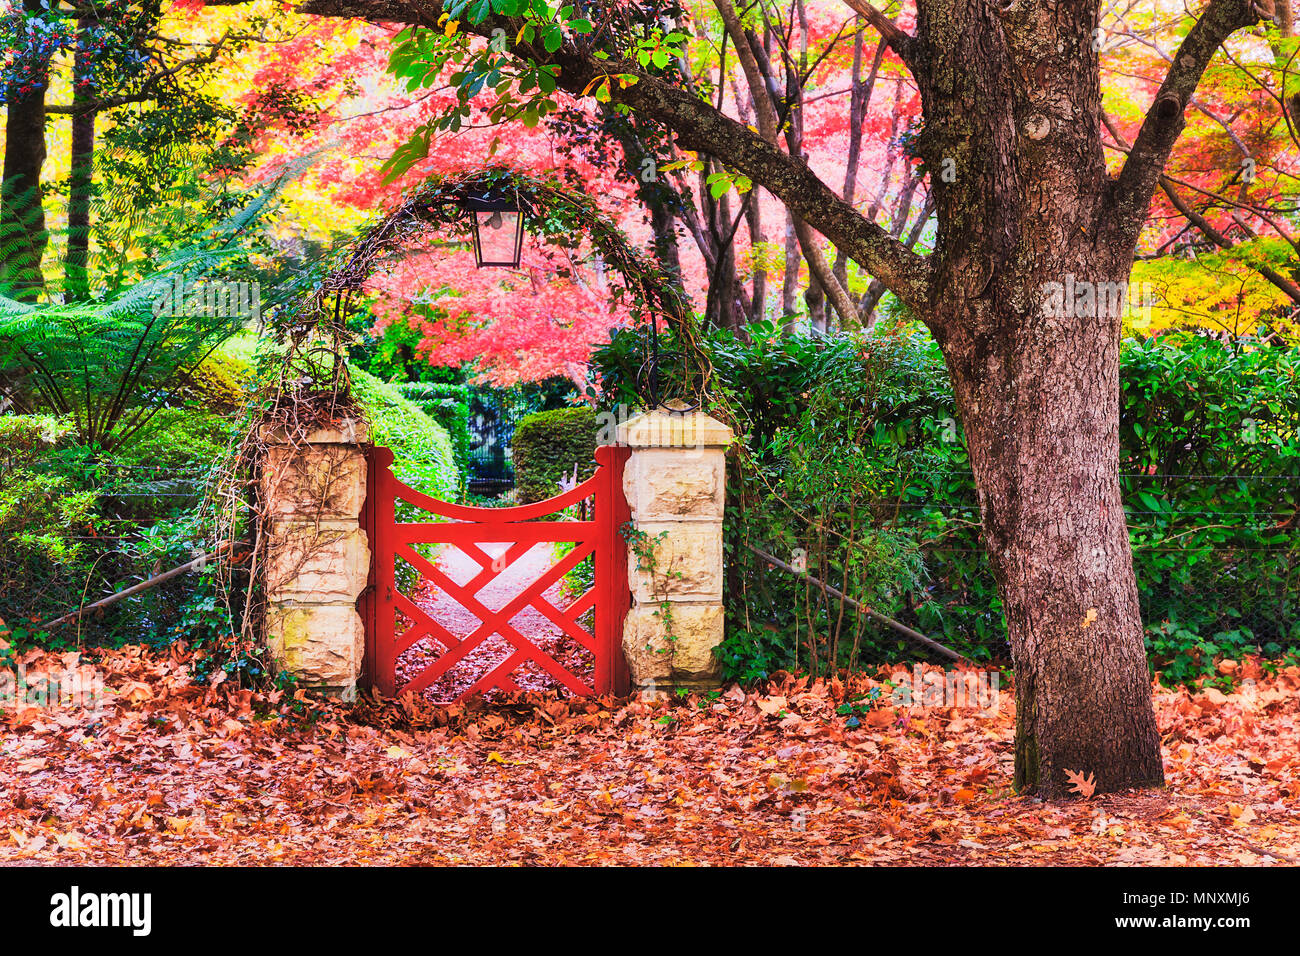 Bienvenido a acogedor colorido jardín formal en alta temporada de otoño en el Monte Wilson de Blue Mountains. Foto de stock